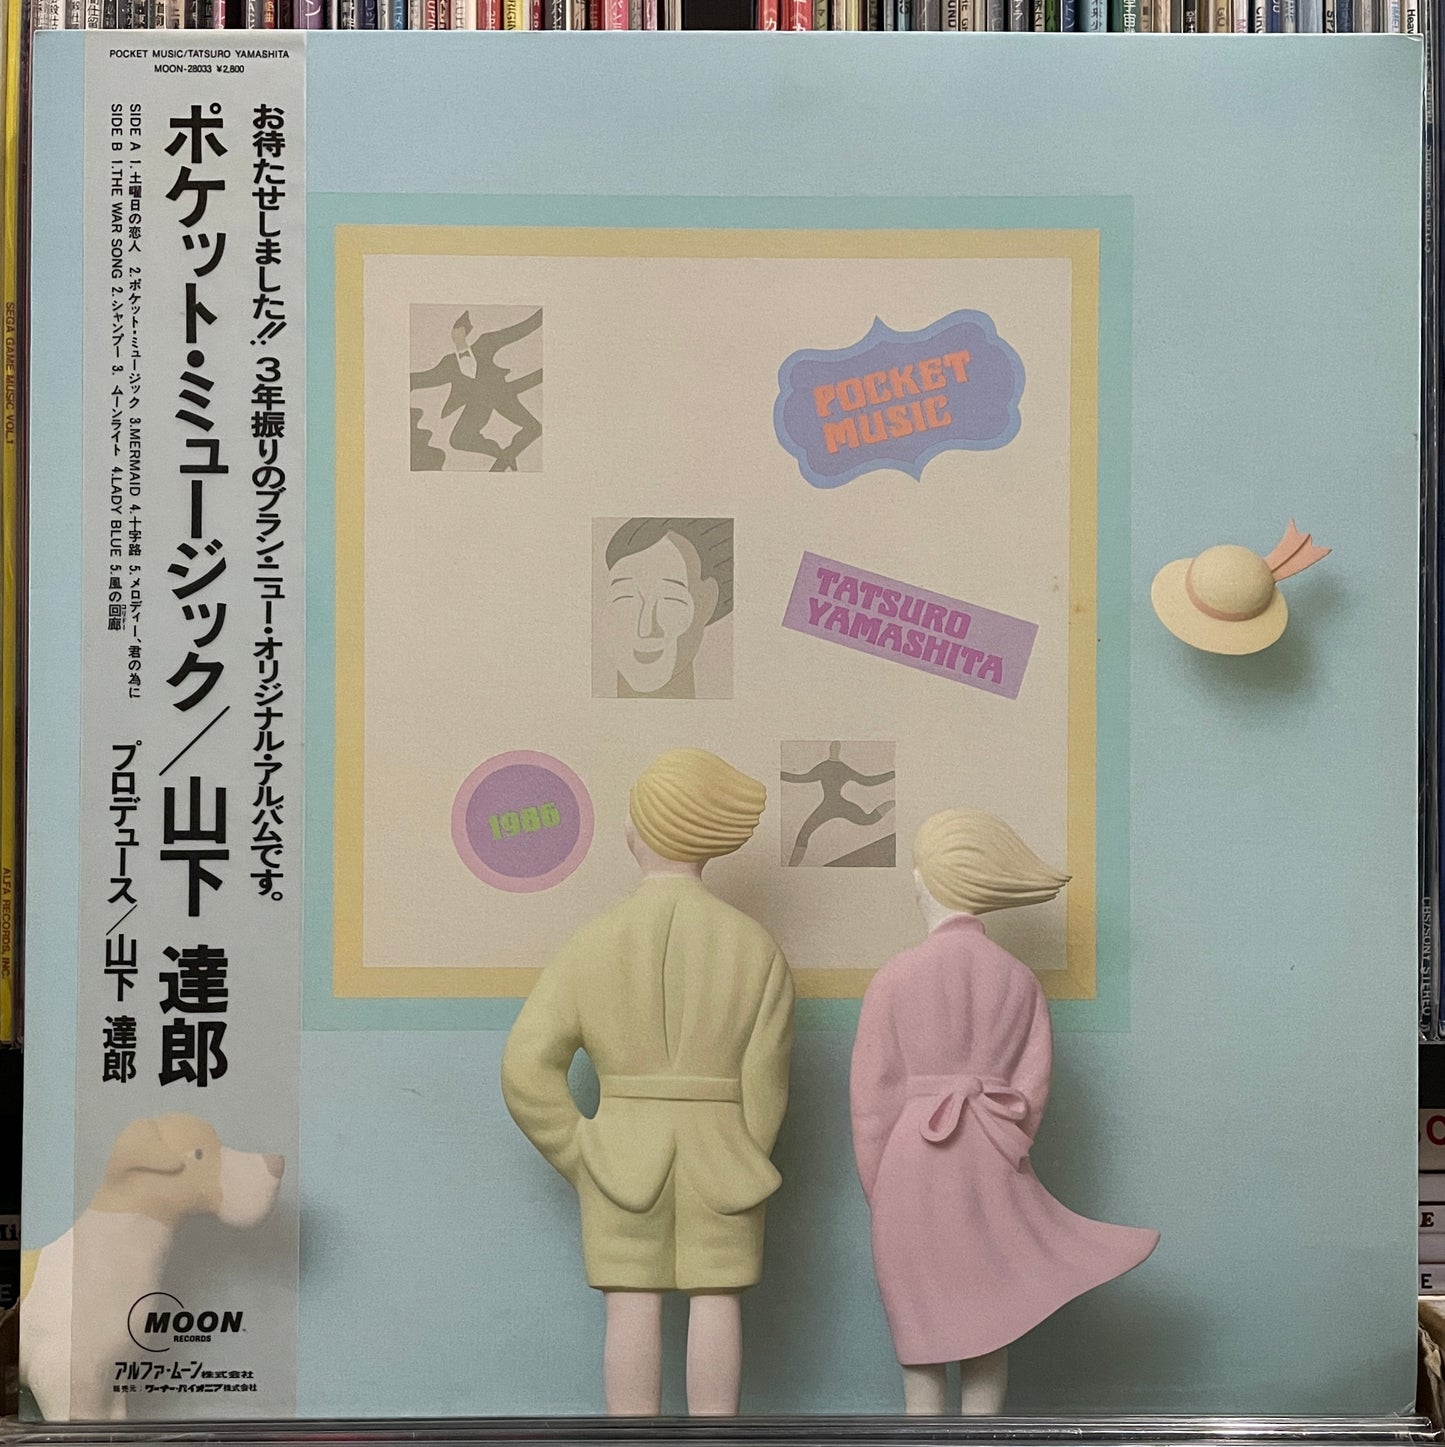 Tatsuro Yamashita “Pocket Music” (1986)